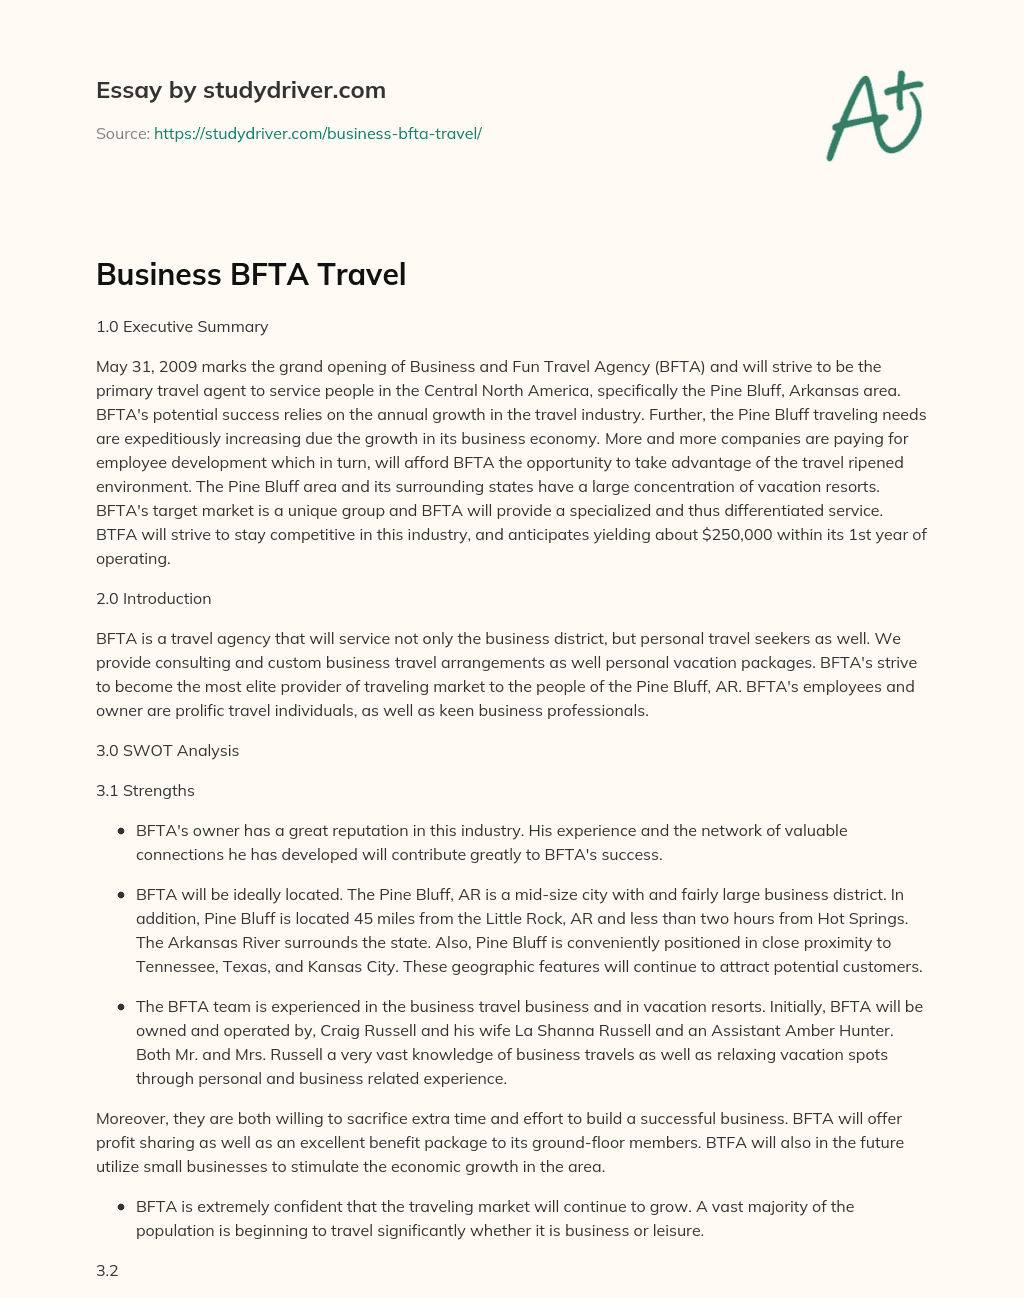 Business BFTA Travel essay